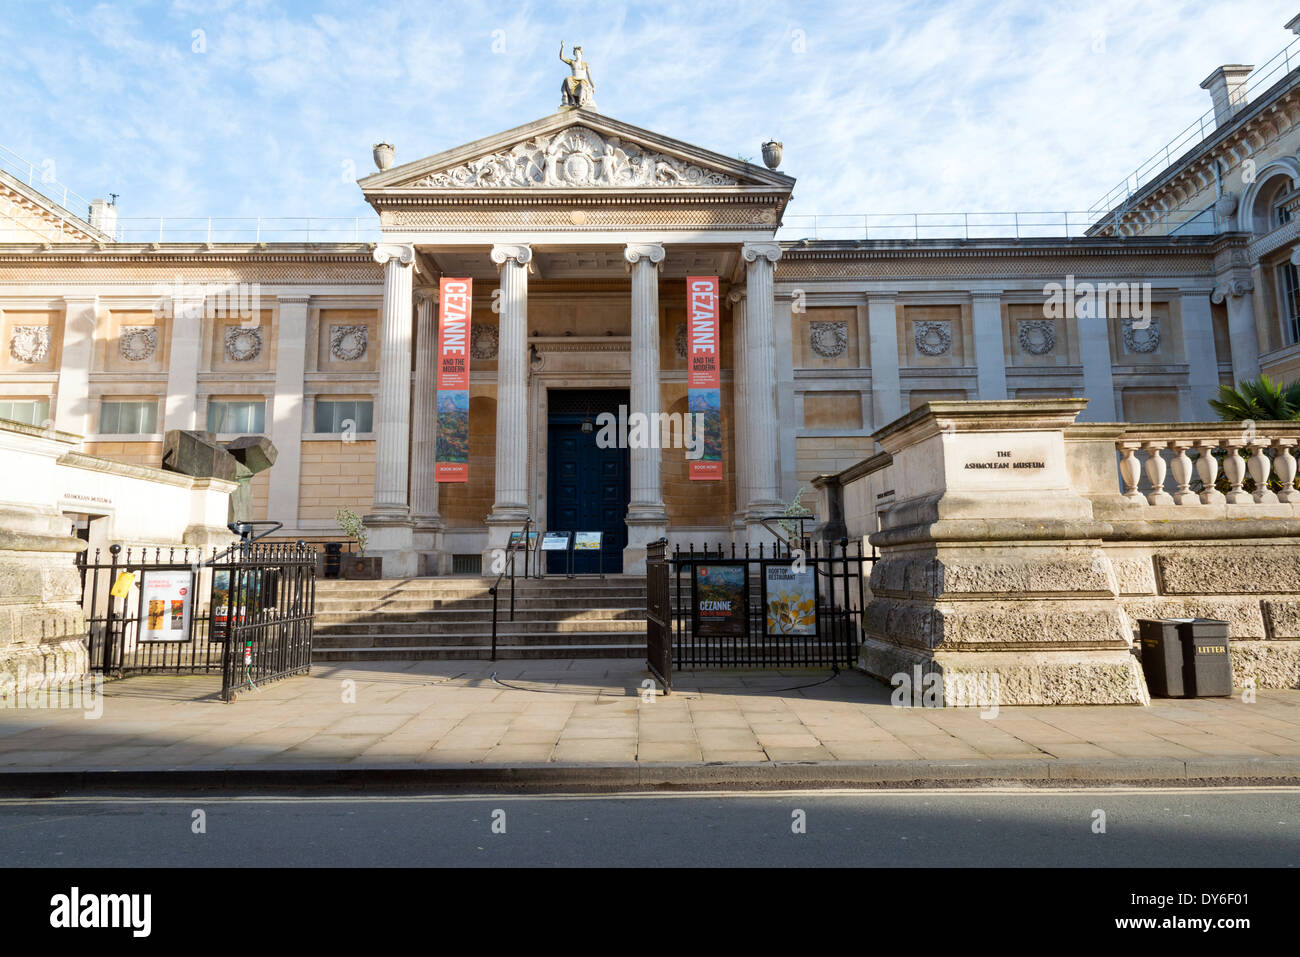 Ashmolean Museum d'Oxford, au Royaume-Uni. Banque D'Images